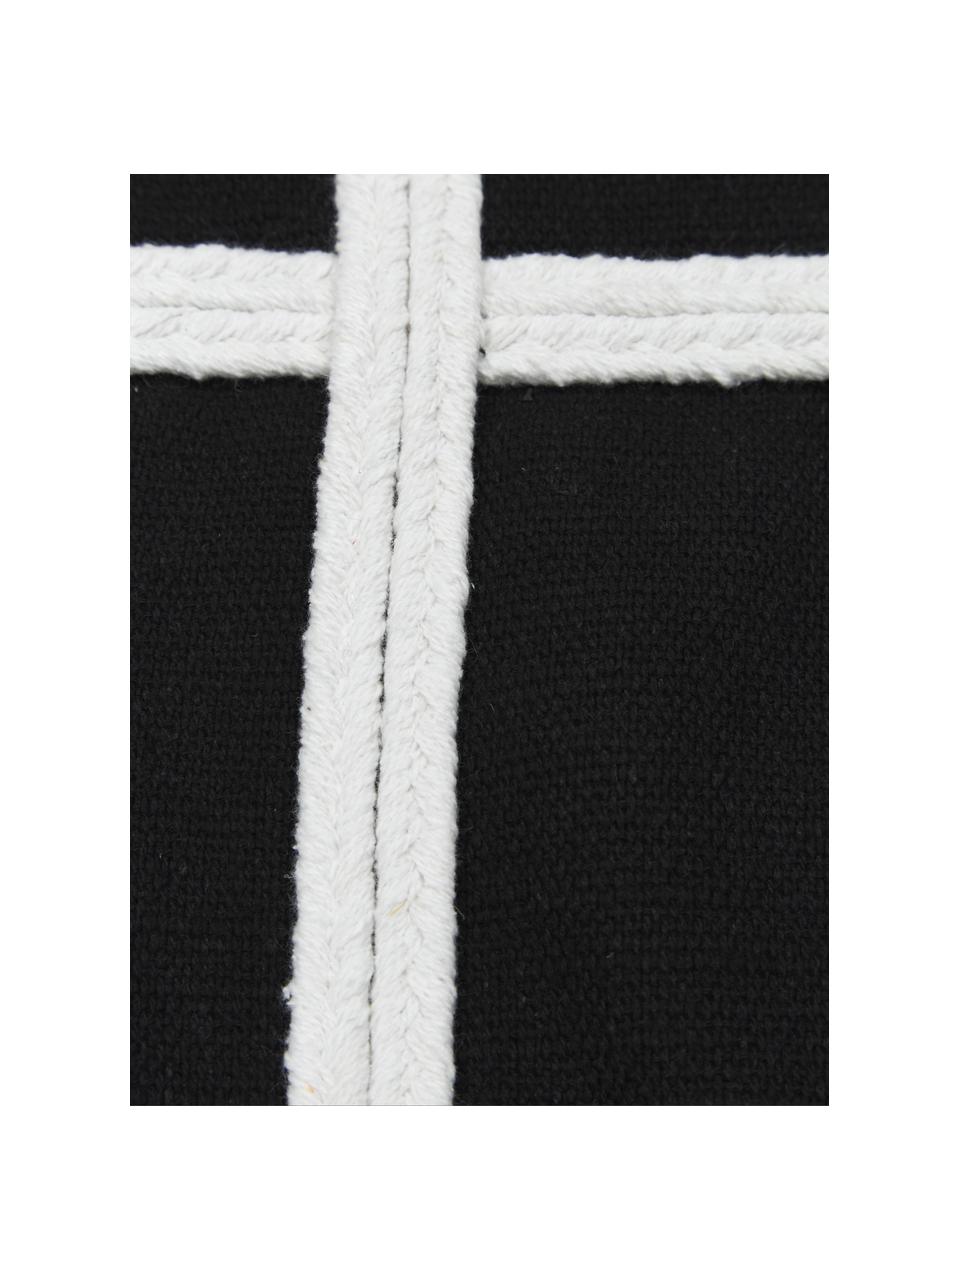 Poszewka na poduszkę z bawełny z chwostami Piazza, 100% bawełna, Czarny, biały, S 50 x D 50 cm